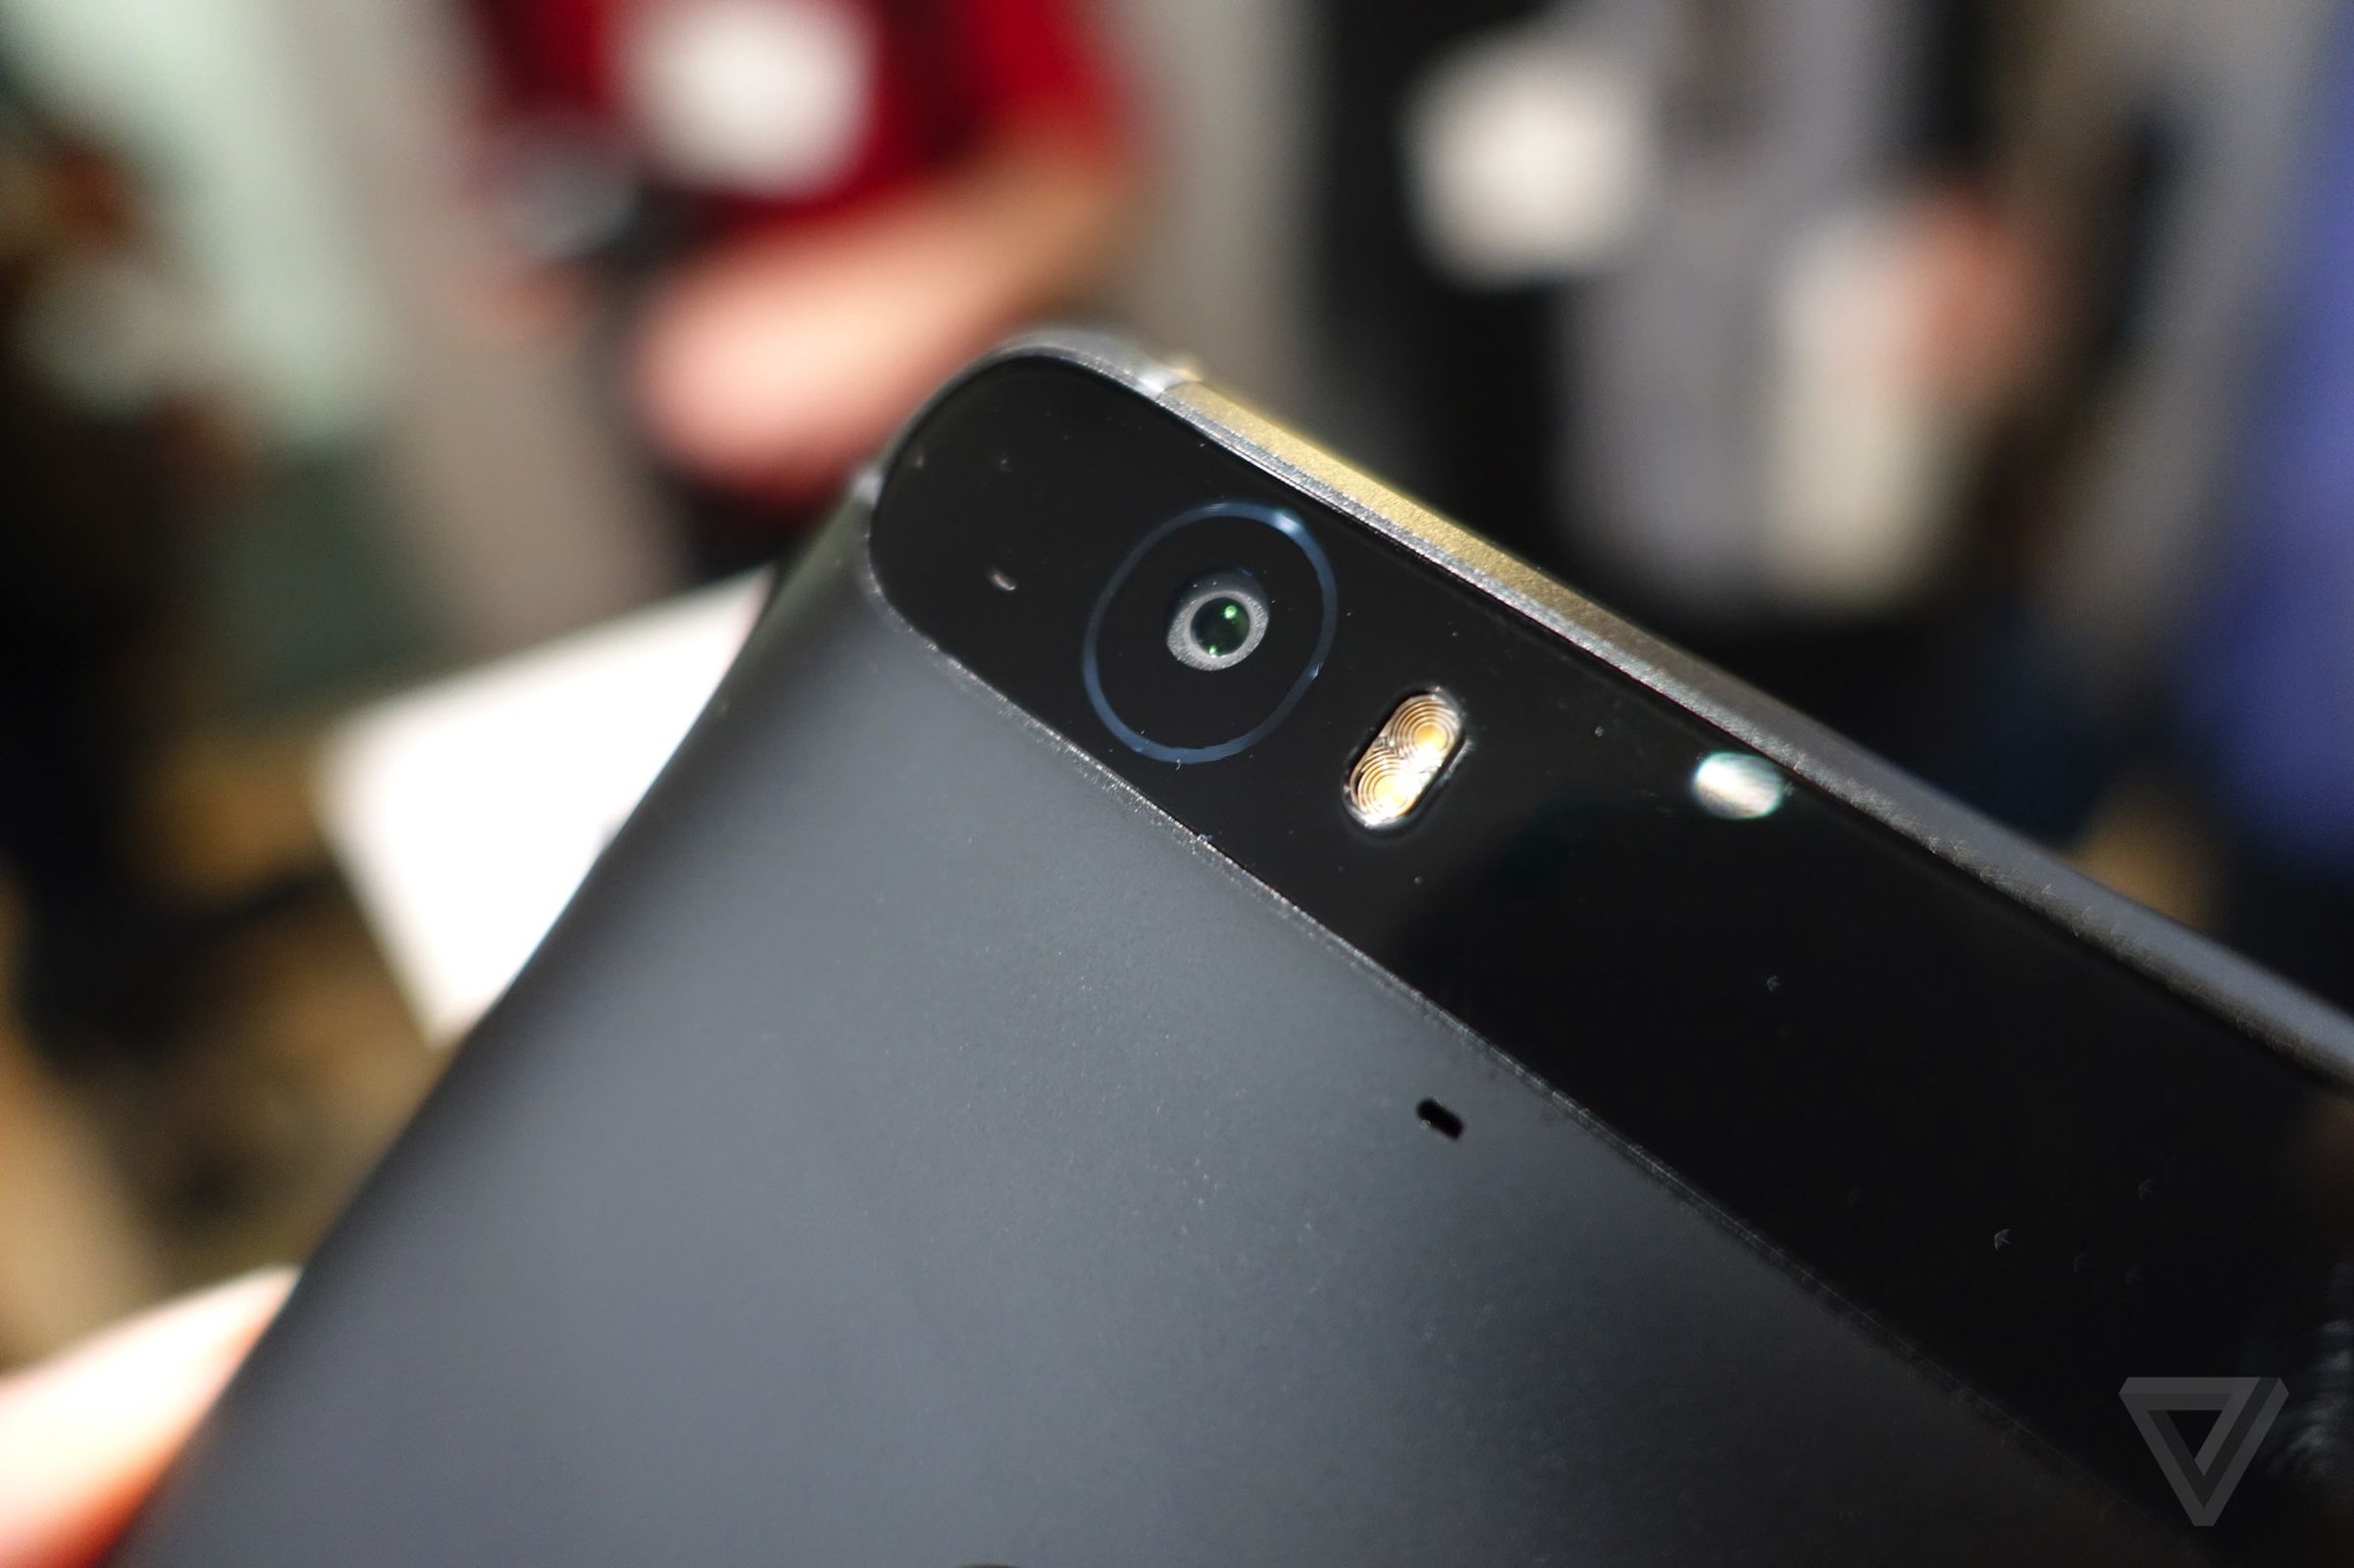 Hands on with new Nexus 6P smartphone